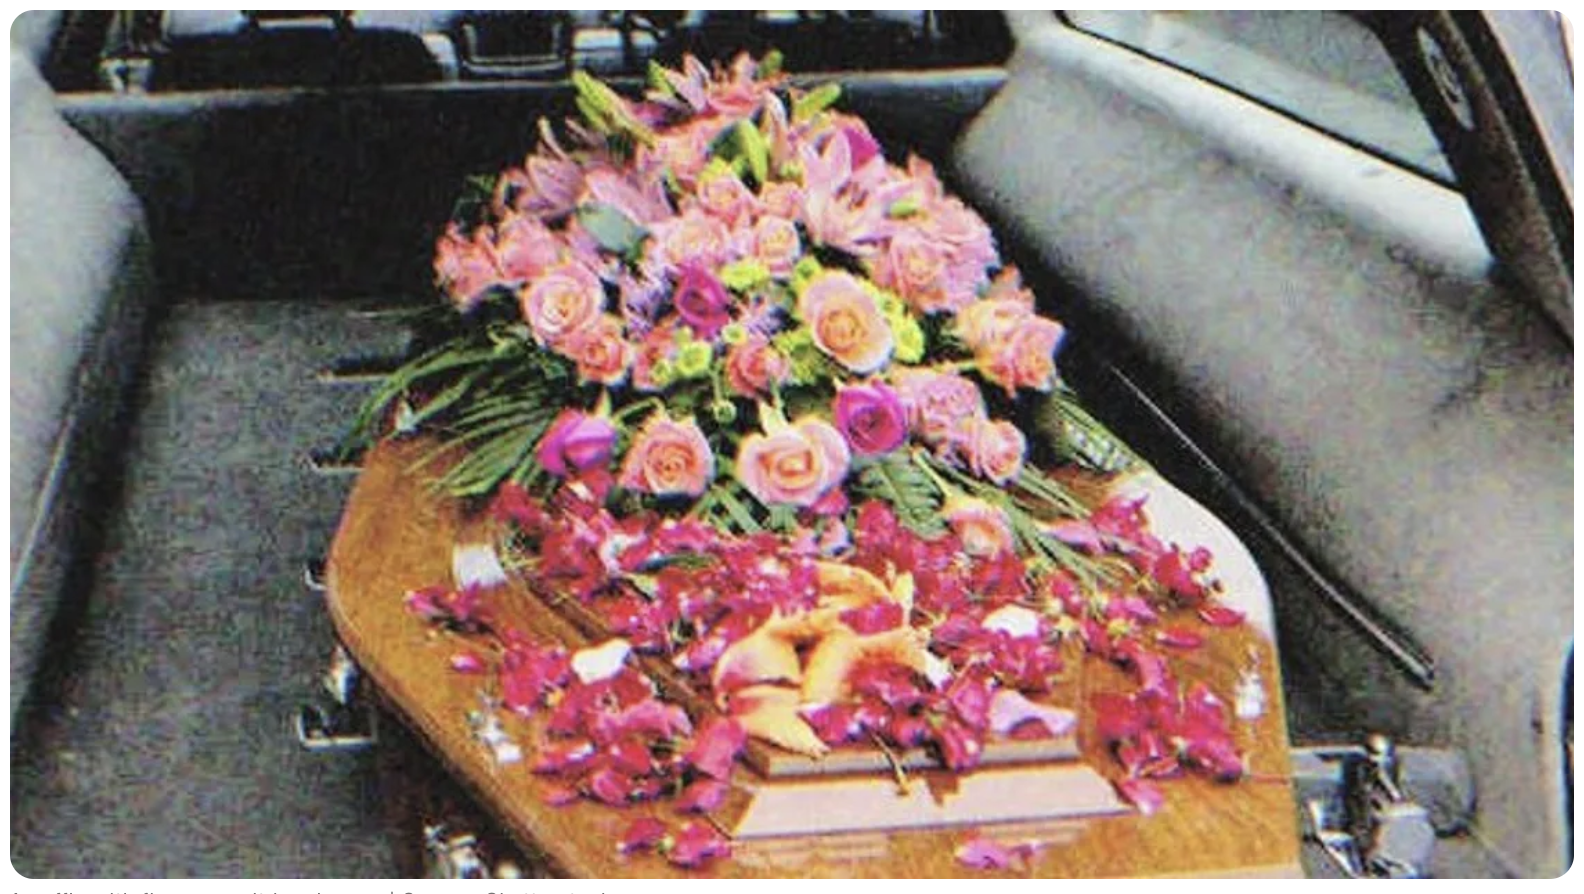 Un cercueil avec des fleurs dessus dans un corbillard | Source : Shutterstock